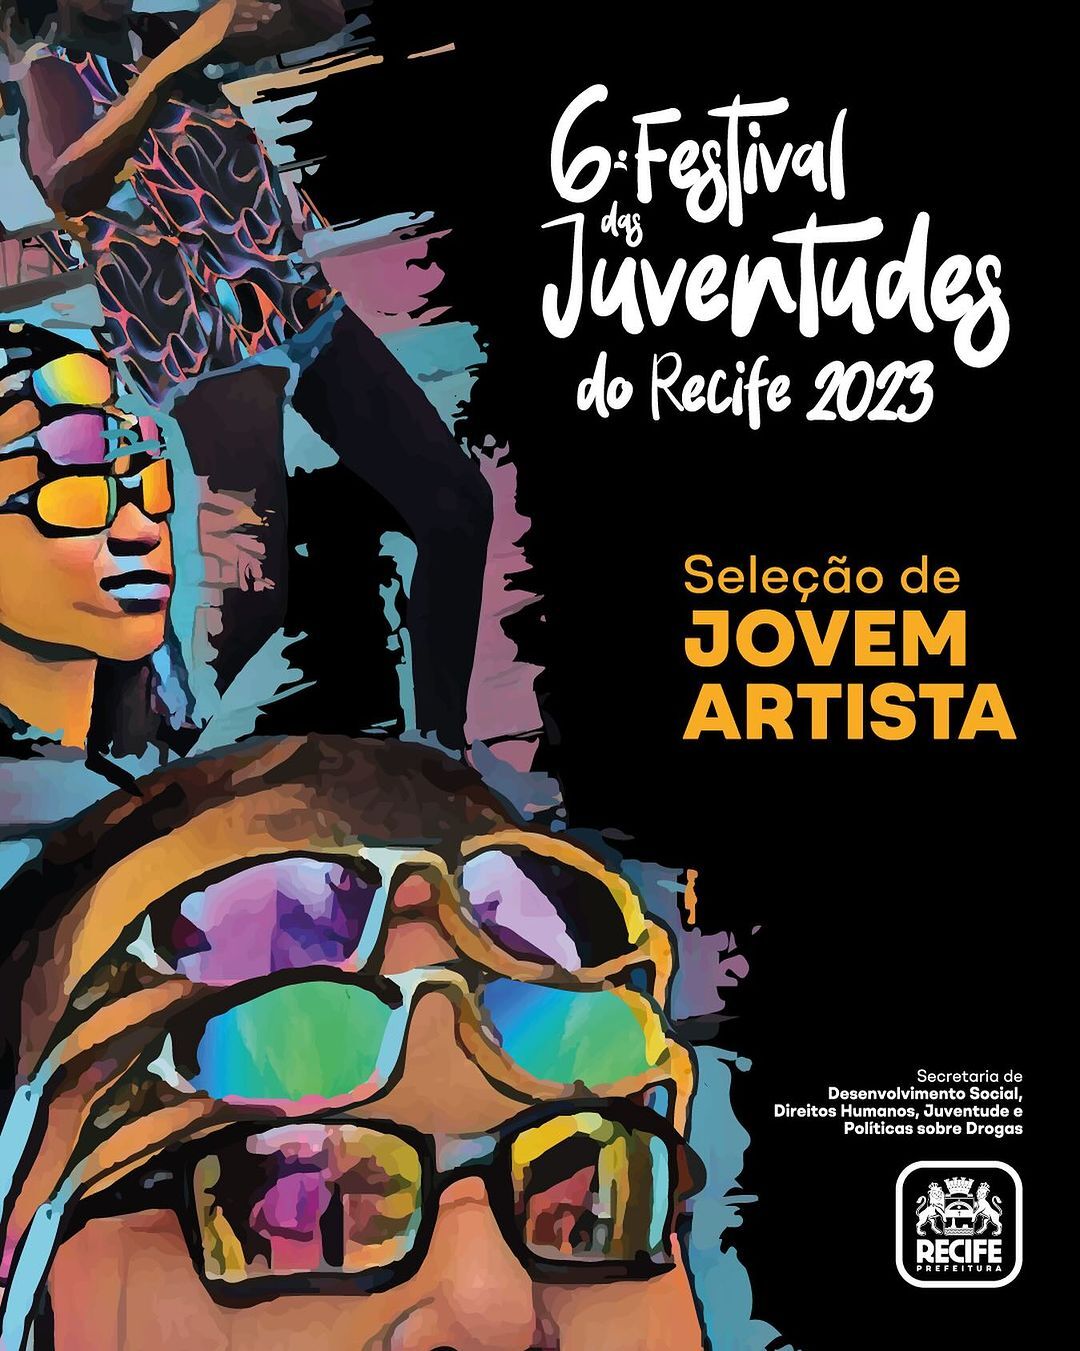 6ª edição do Festival das Juventudes do Recife - Seleção de Jovem Artista